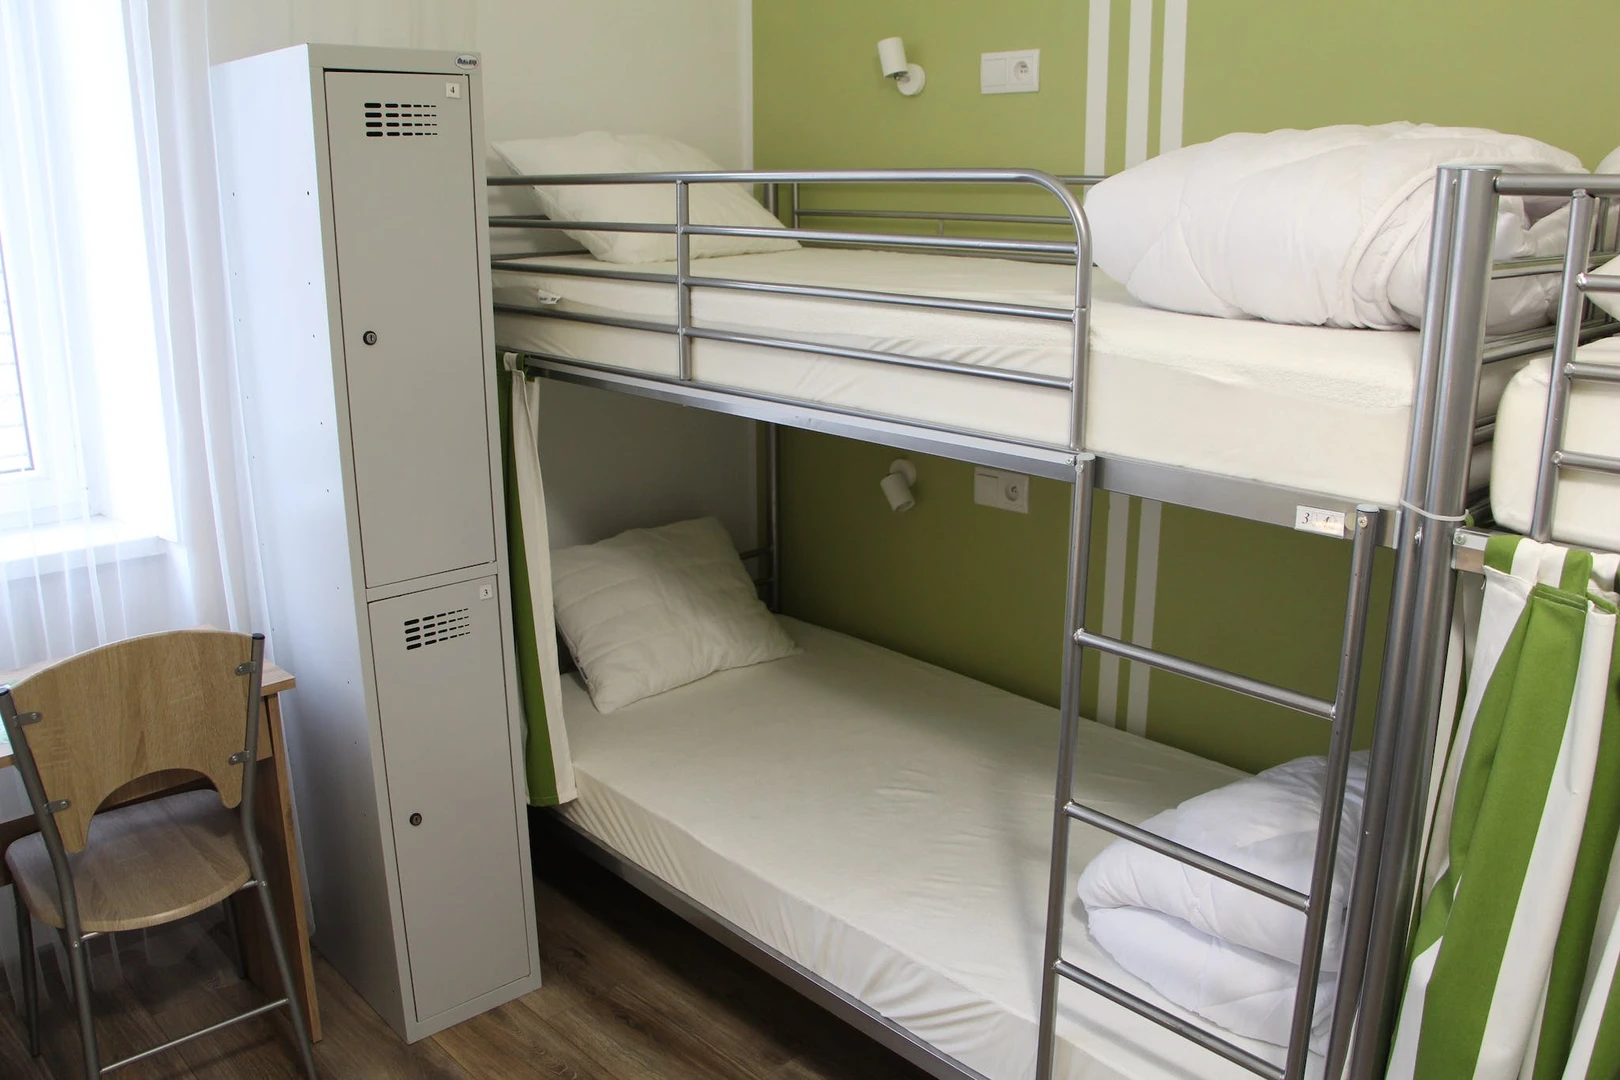 Cheap shared room in krakow